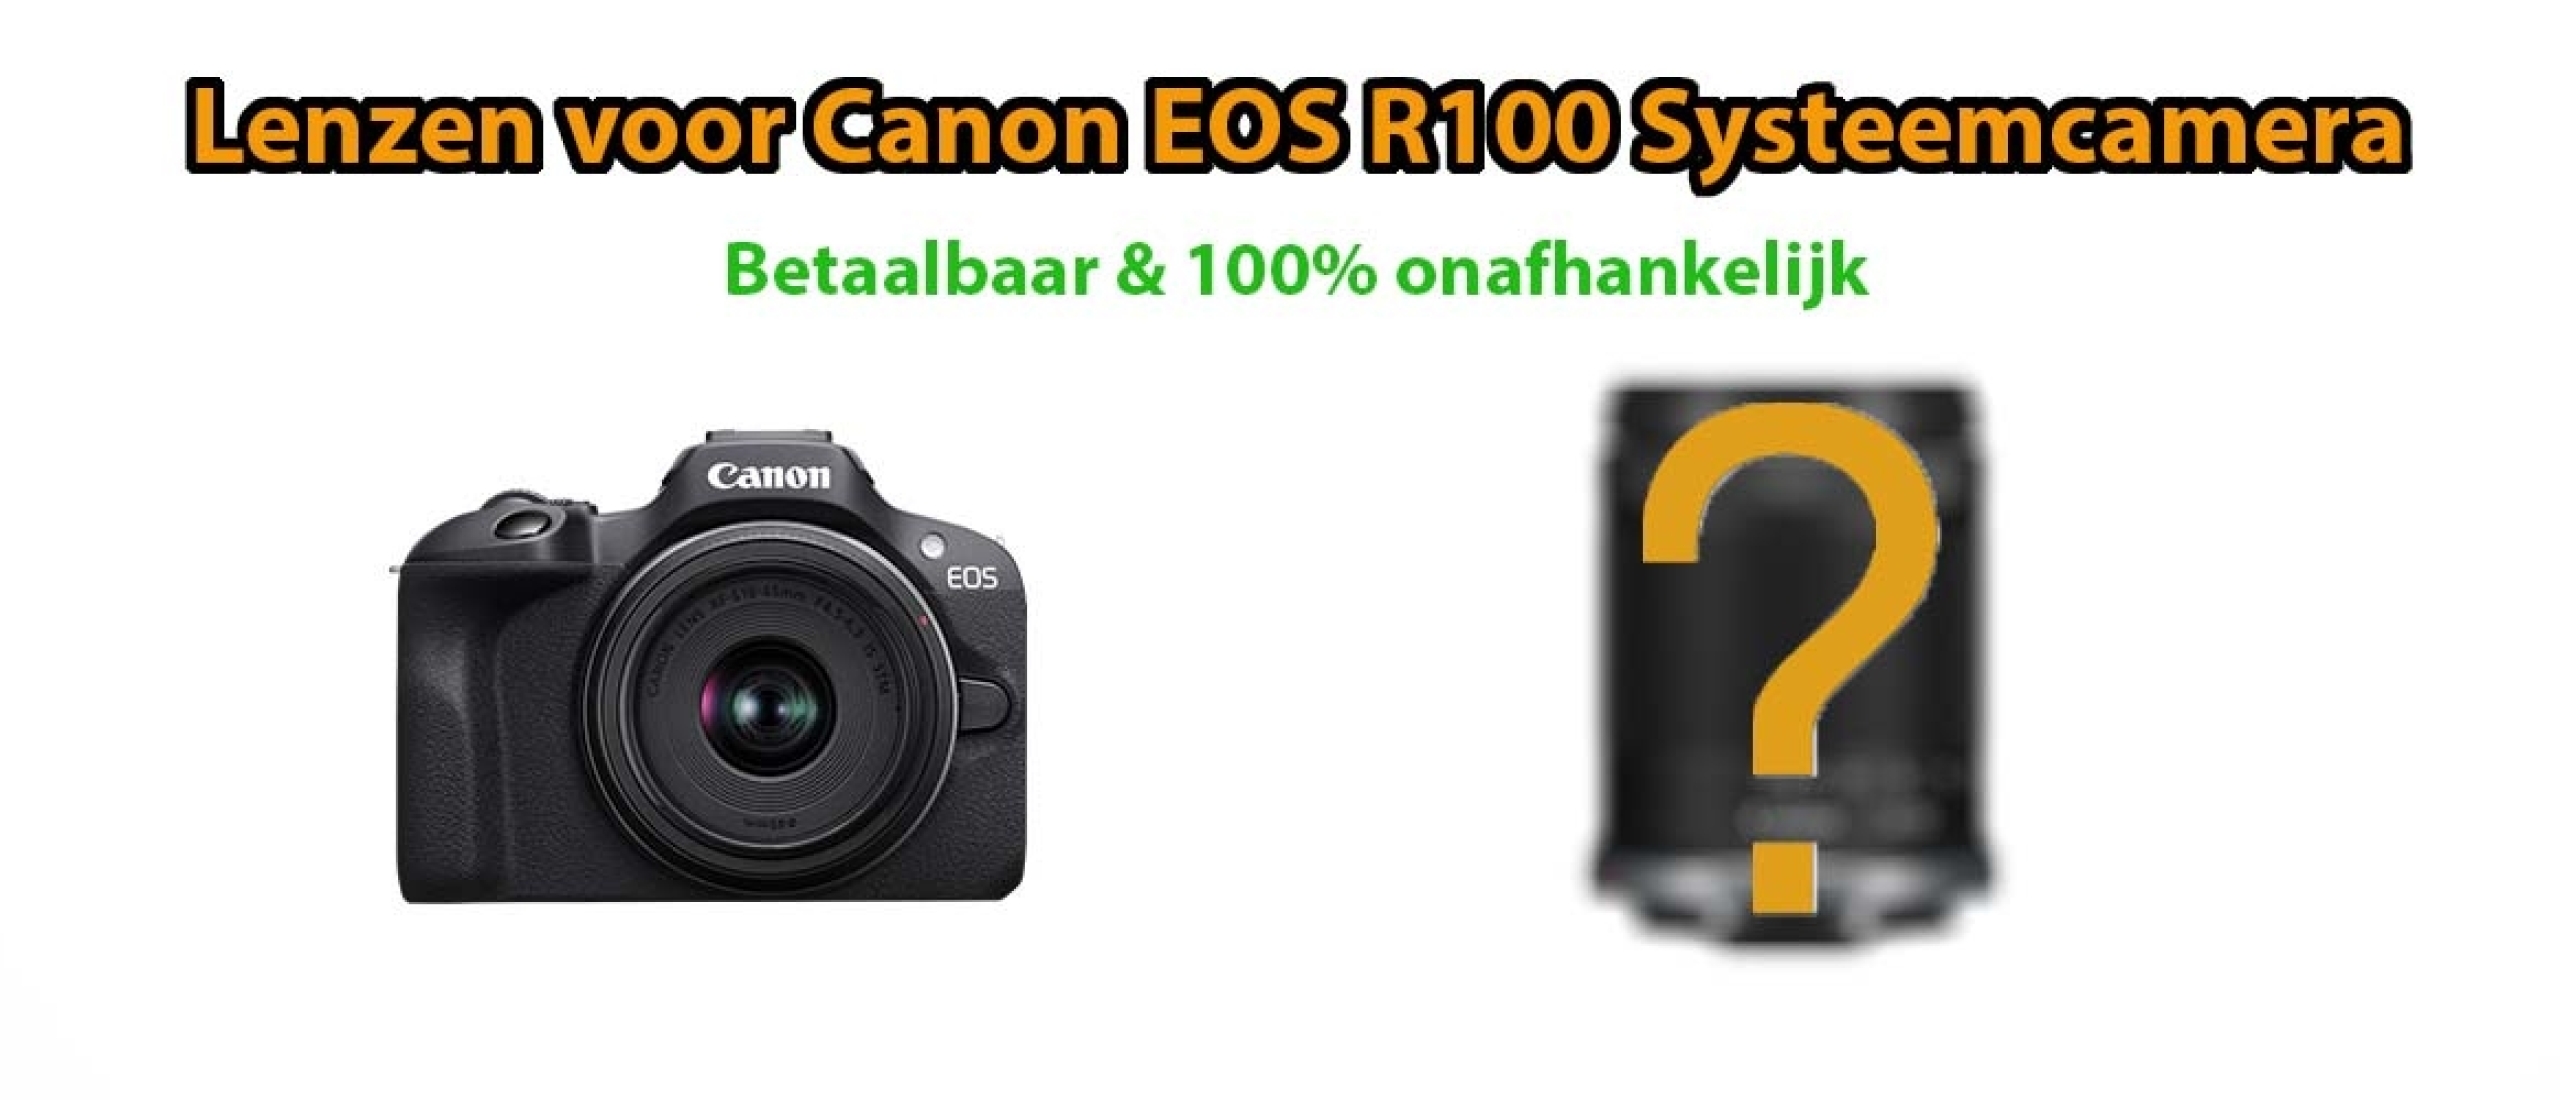 Beste lenzen voor Canon EOS R100 Systeemcamera